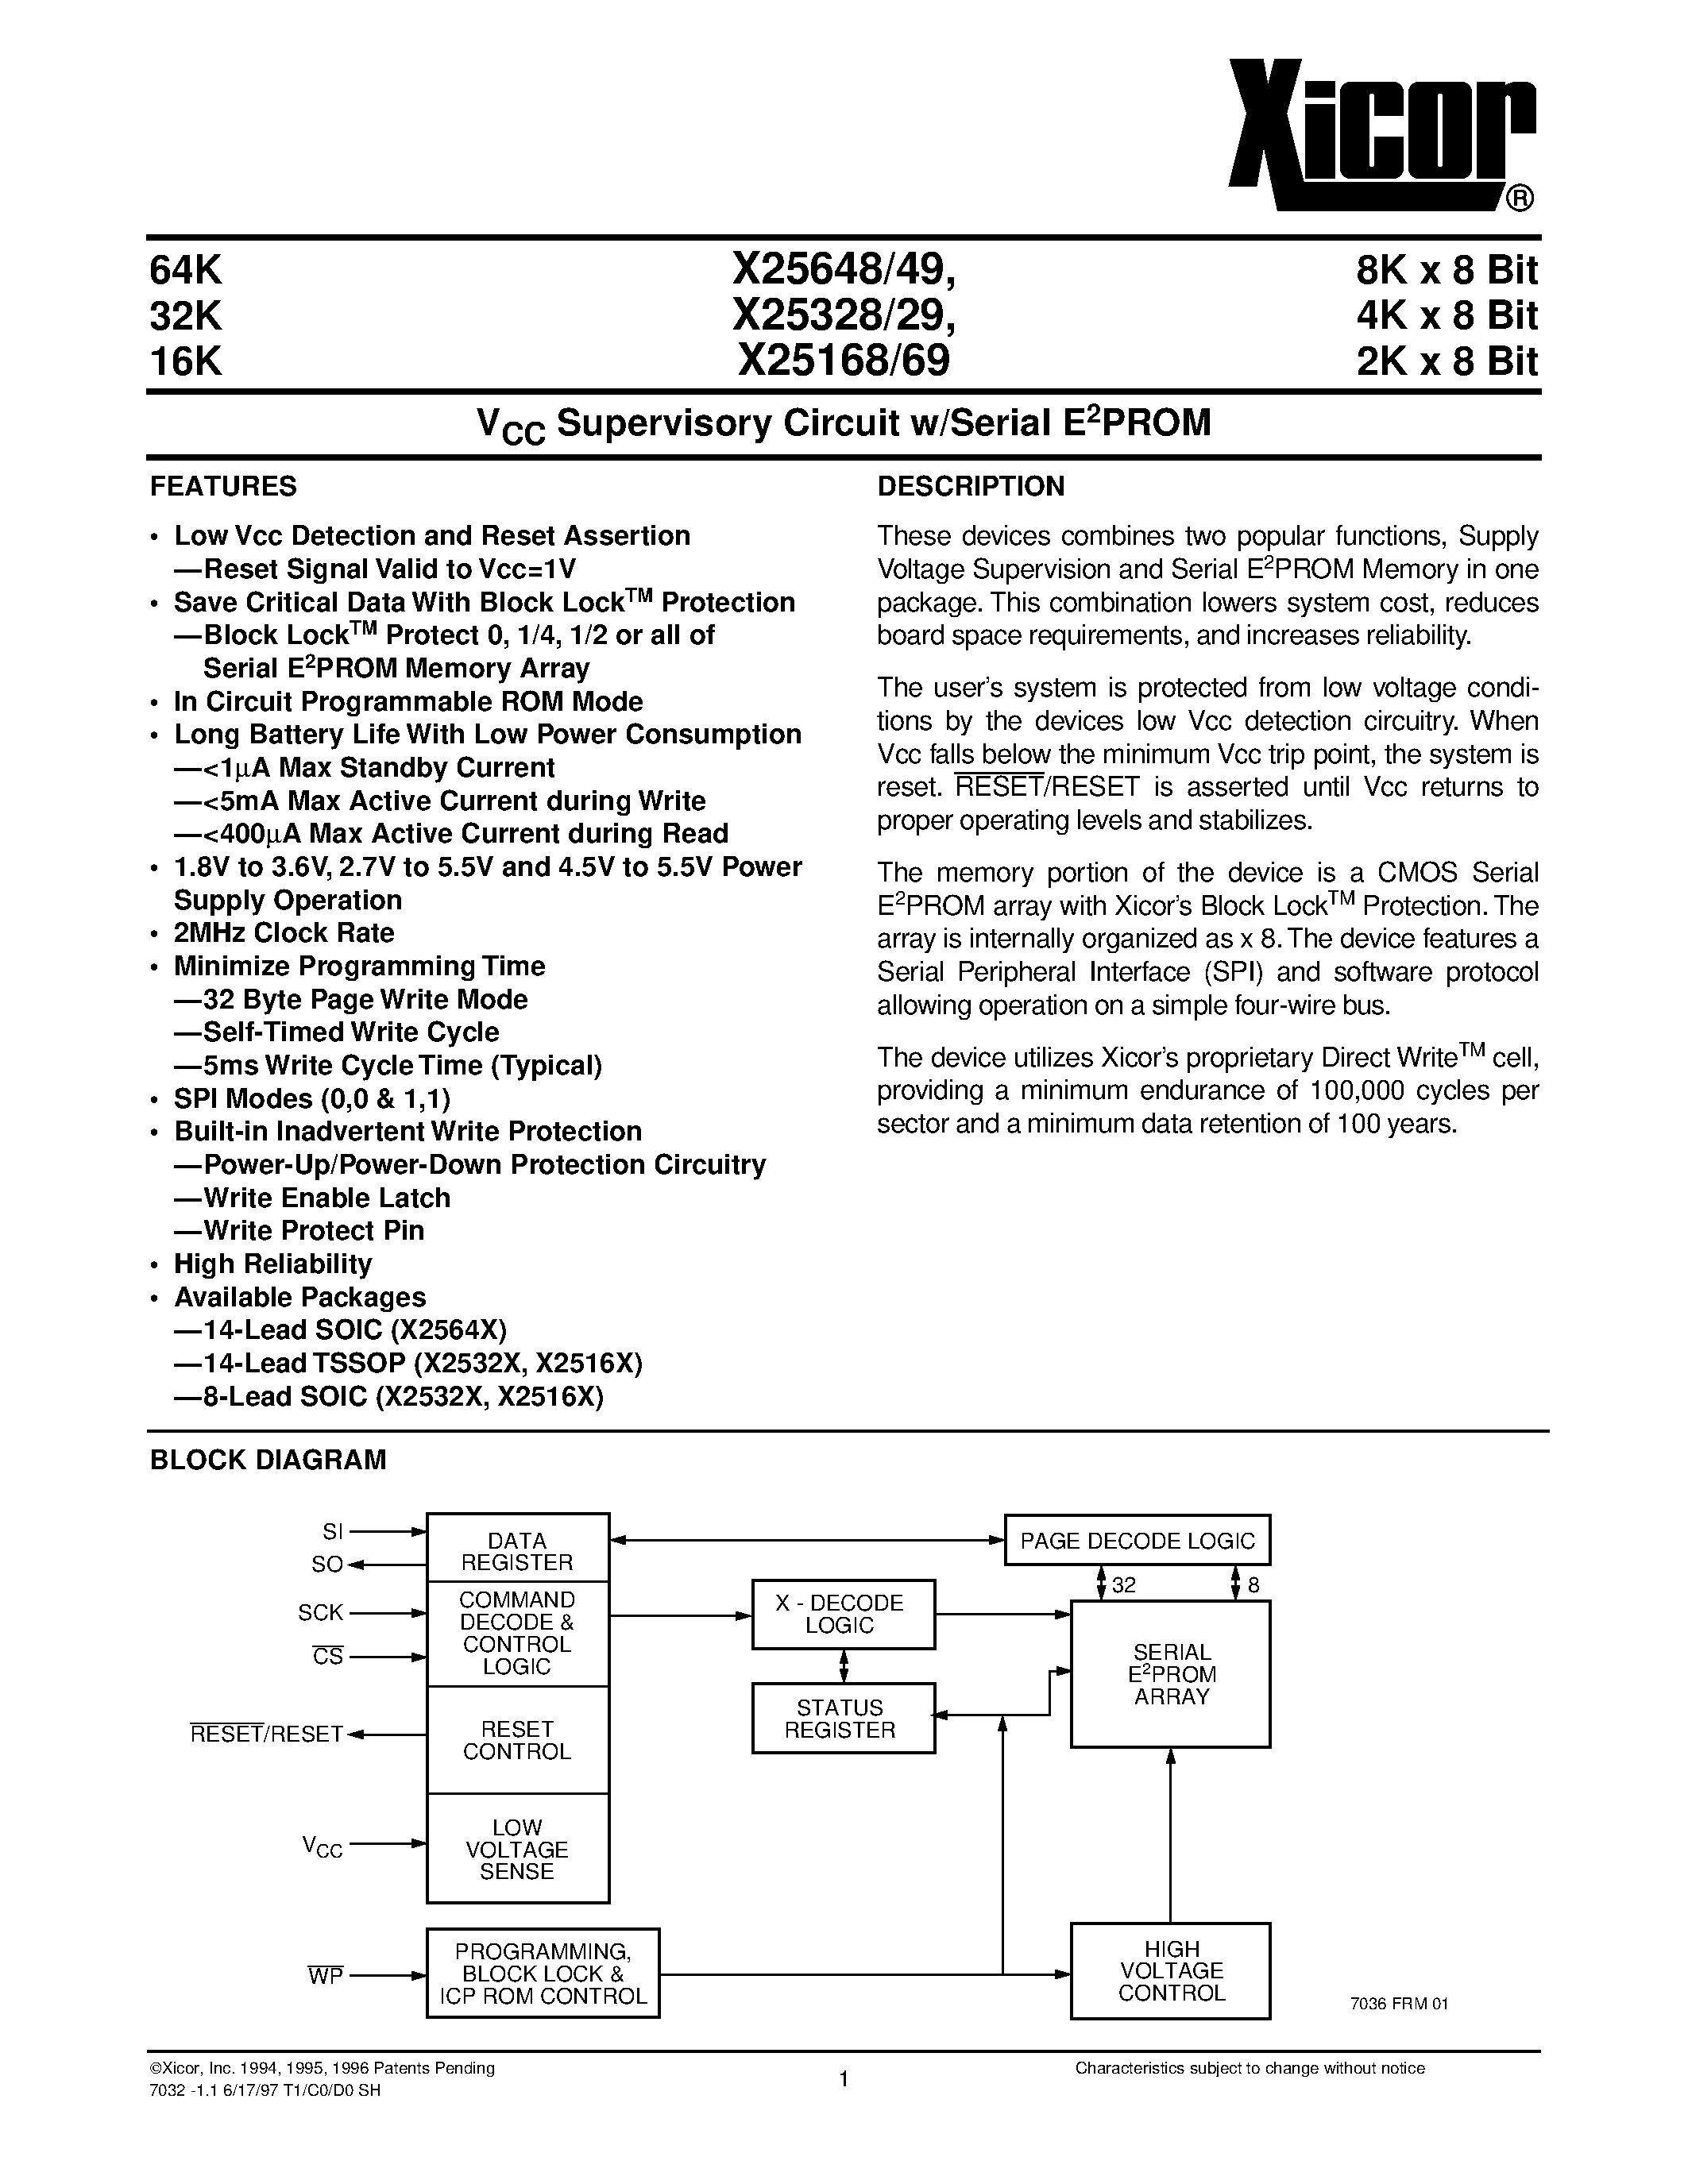 Даташит X25649S14-1.8 - V CC Supervisory Circuit w/Serial E 2 PROM страница 1